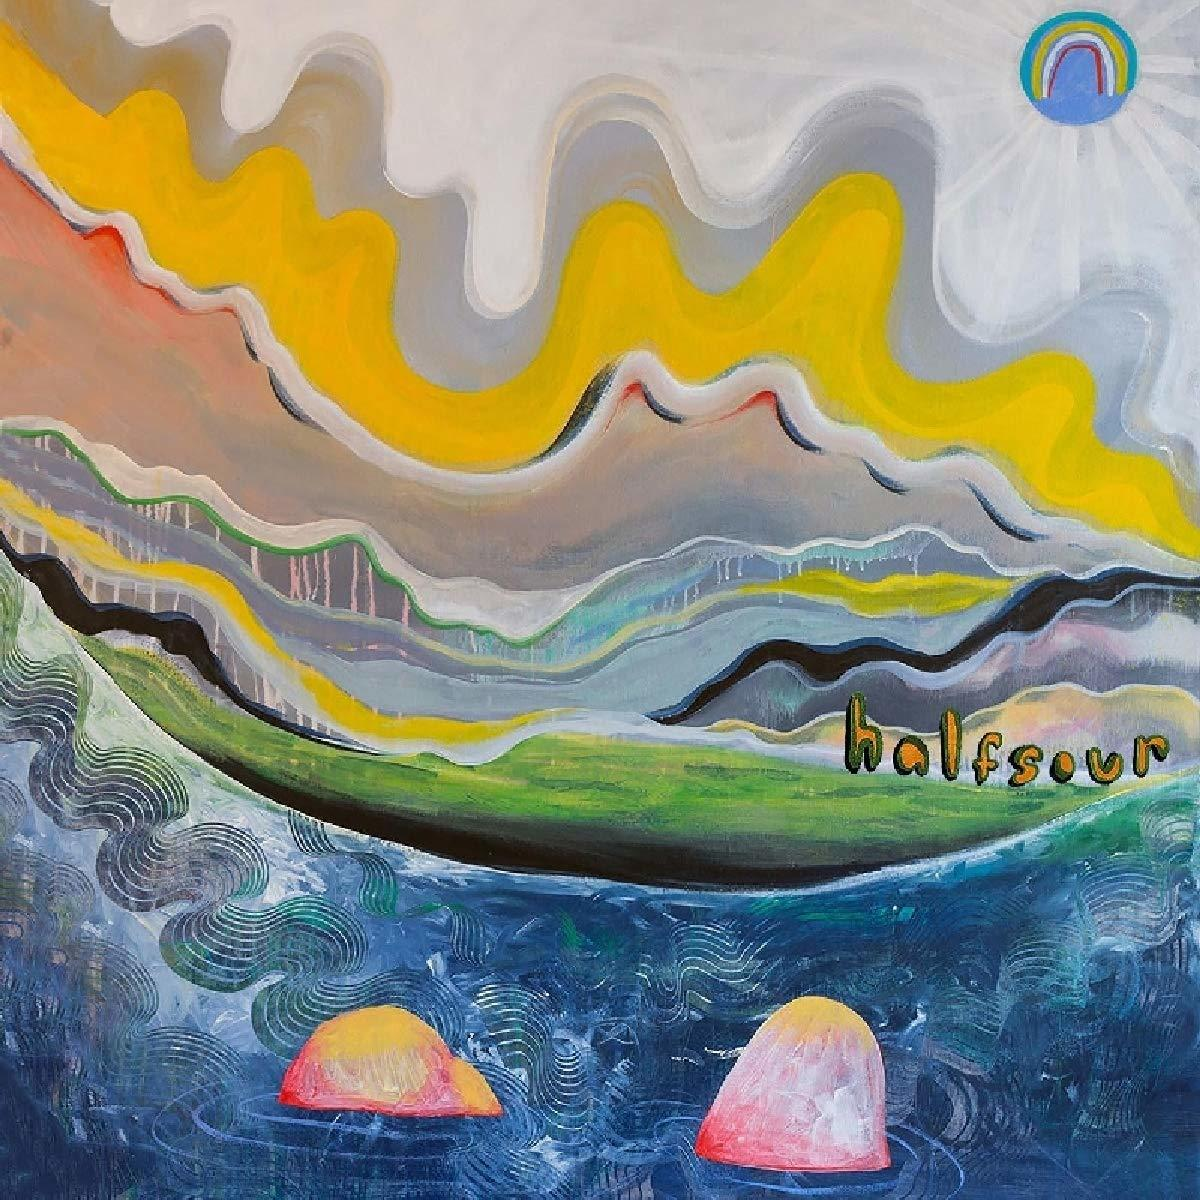 Halfsour - STICKY - (Vinyl)